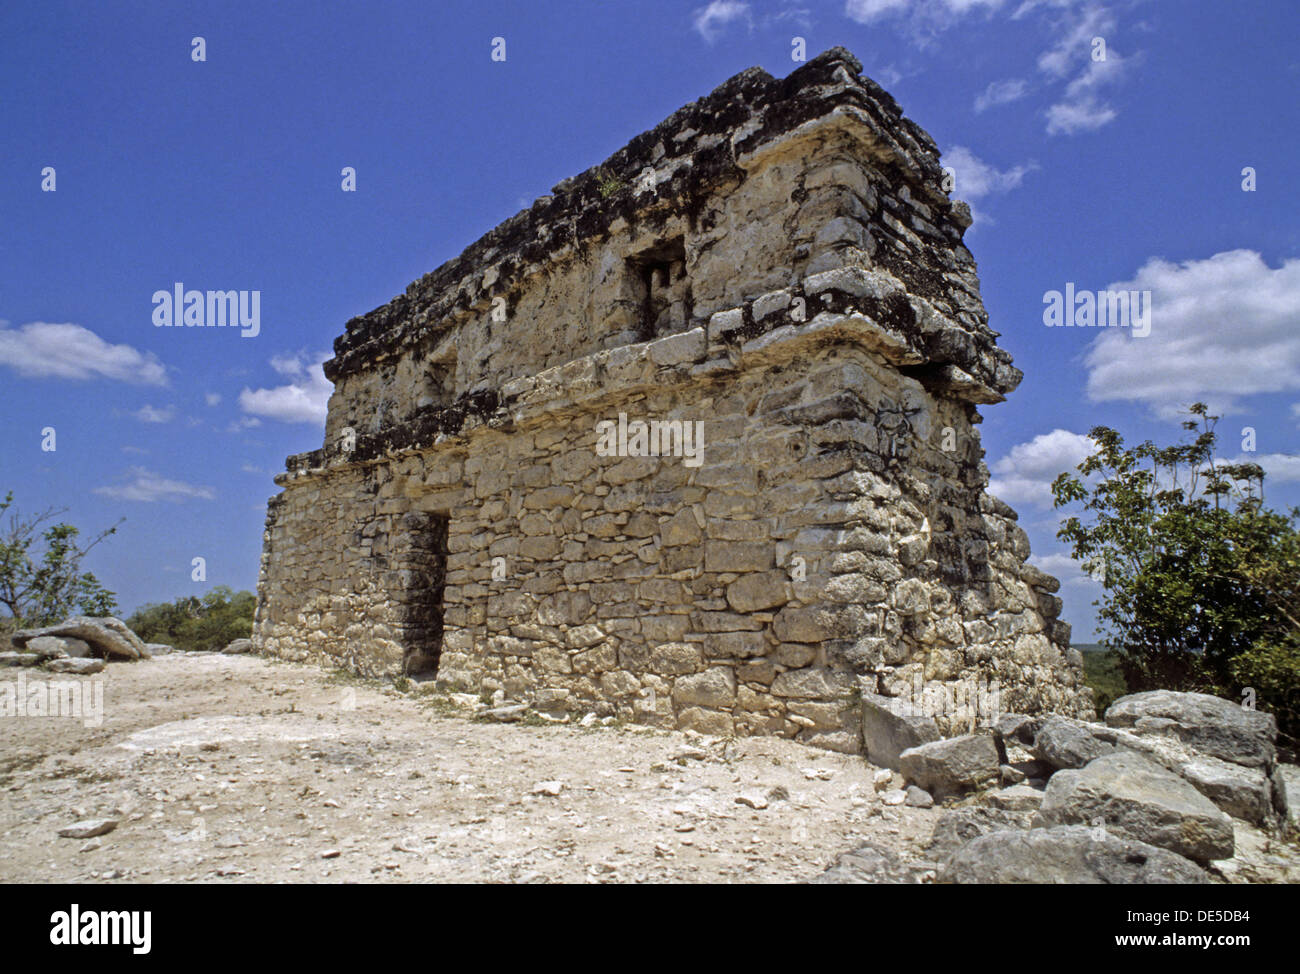 Coba, ciudad en ruinas de la civilización maya precolombina. Quintana Roo, México. Foto de stock